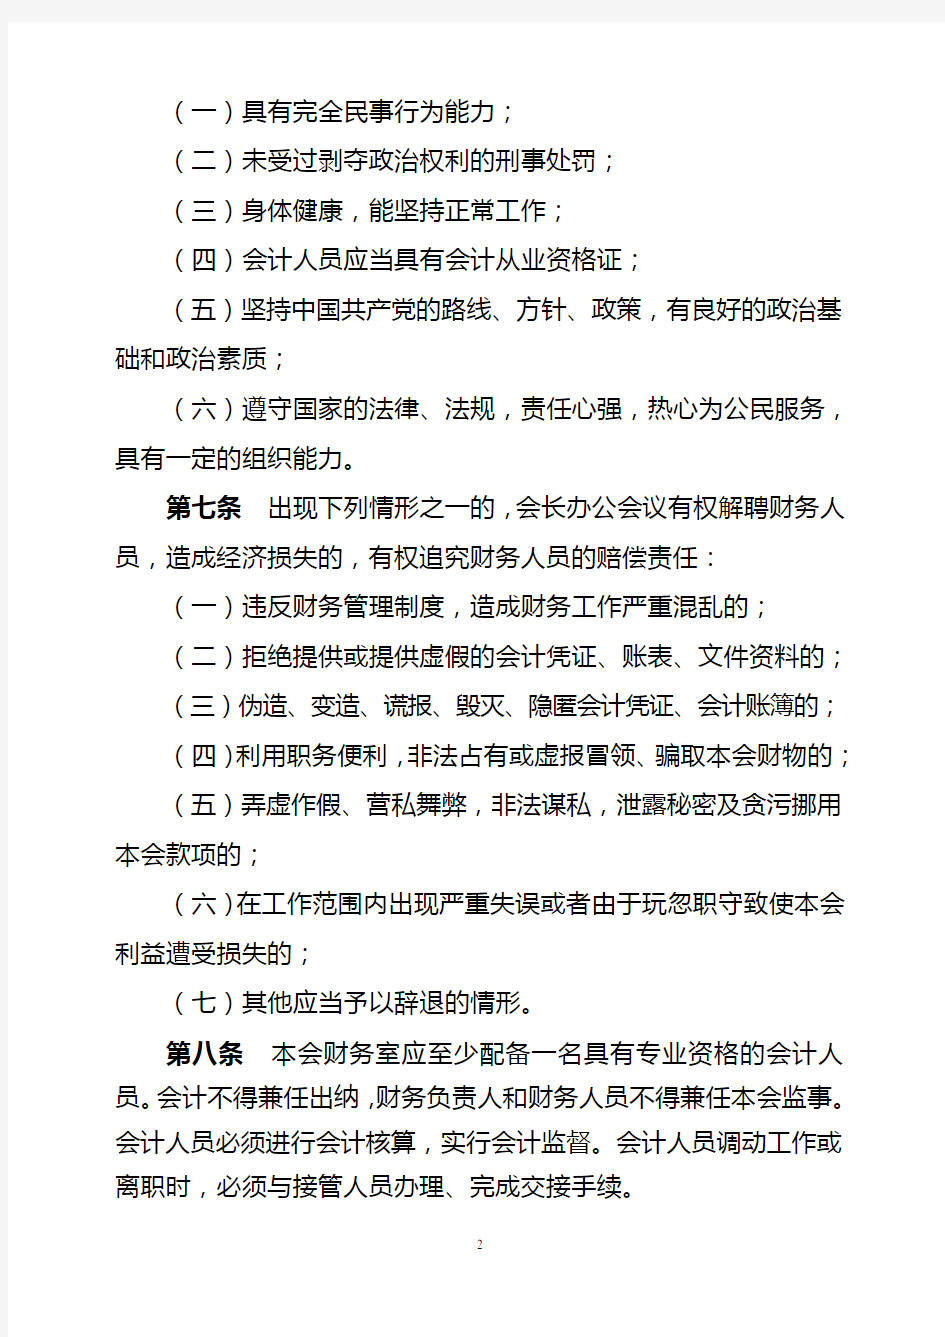 广州市经济法学会财务管理办法